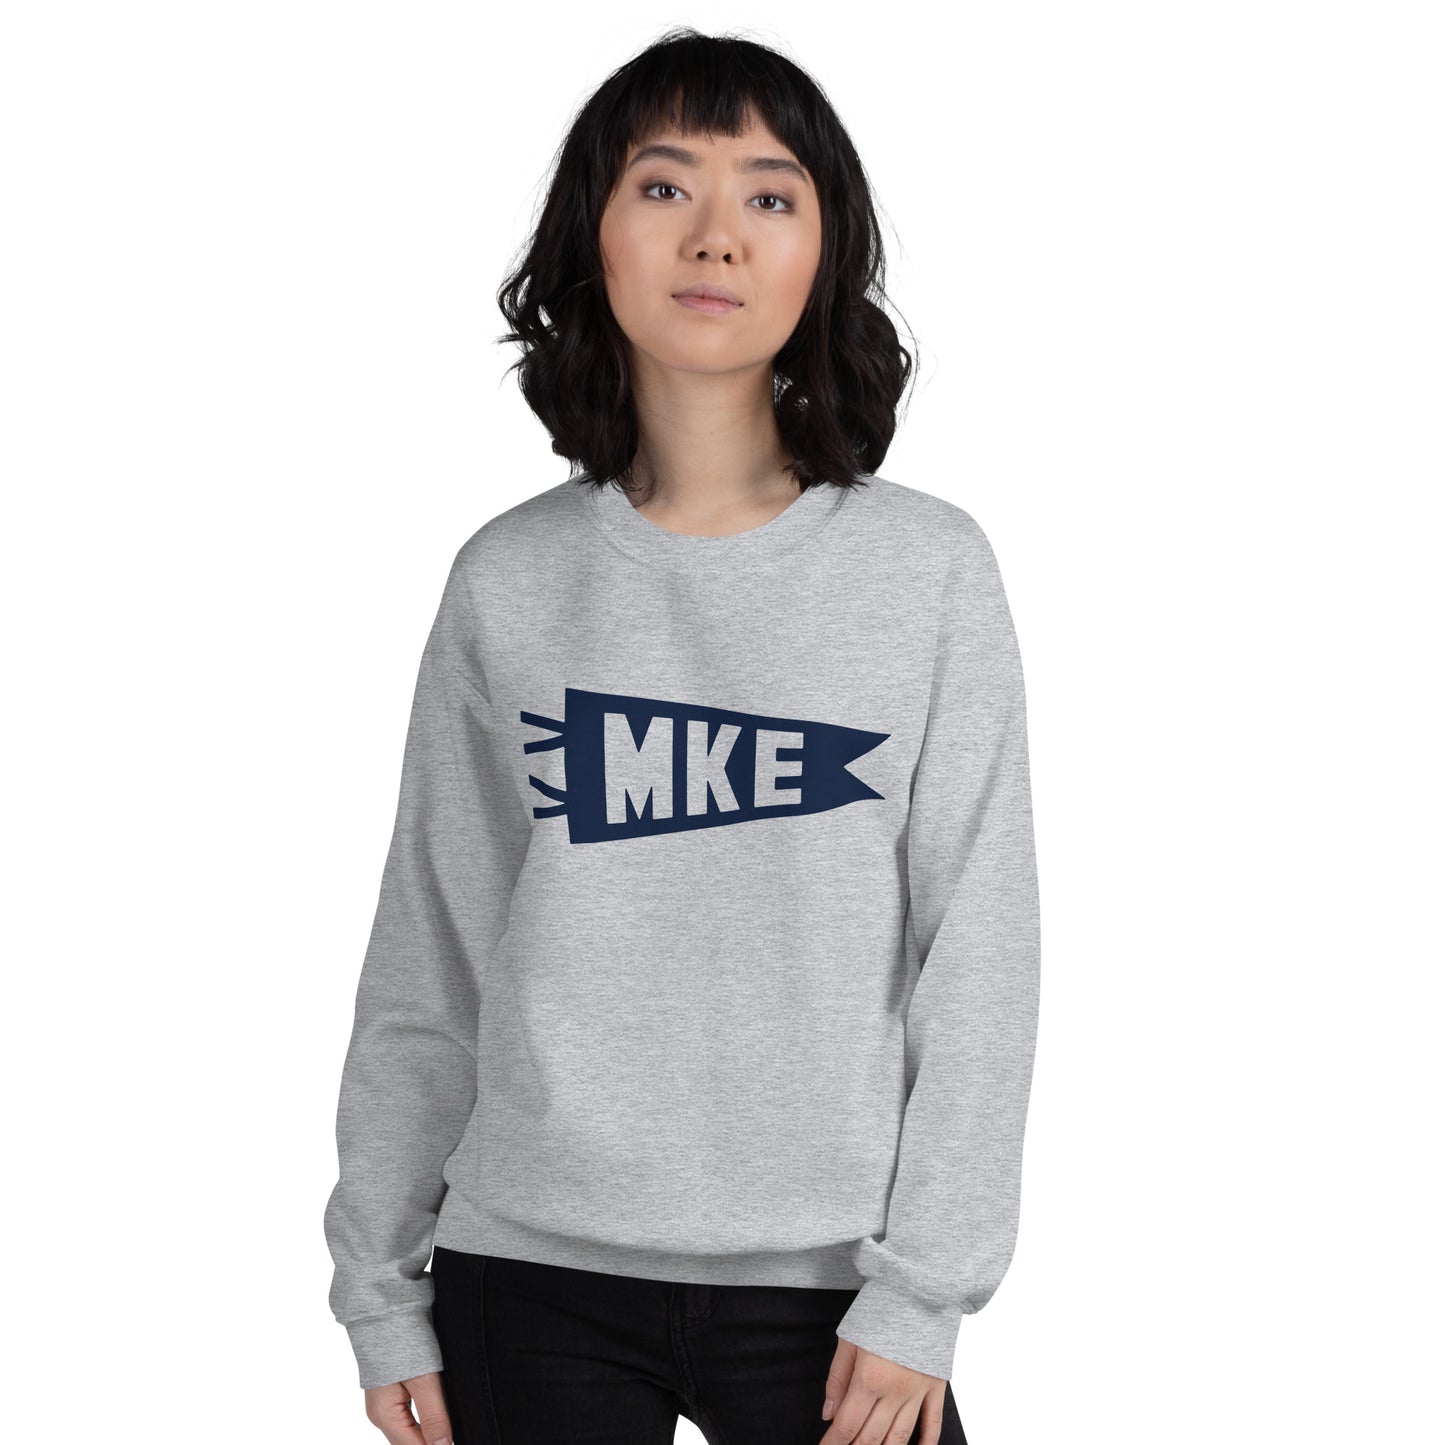 Airport Code Sweatshirt - Navy Blue Graphic • MKE Milwaukee • YHM Designs - Image 10